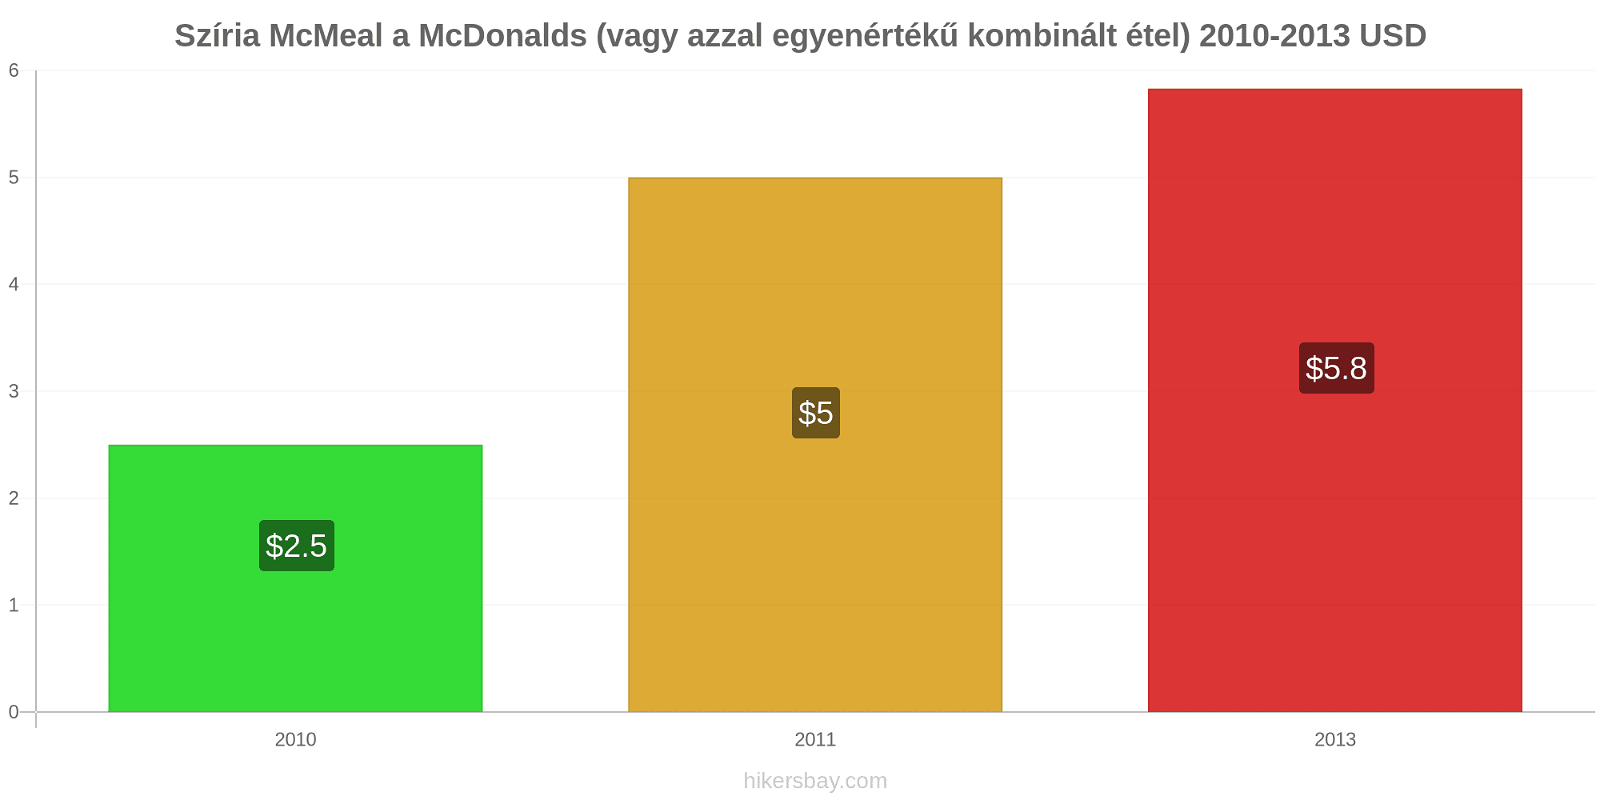 Szíria árváltozások McMeal a McDonalds (vagy azzal egyenértékű kombinált étel) hikersbay.com